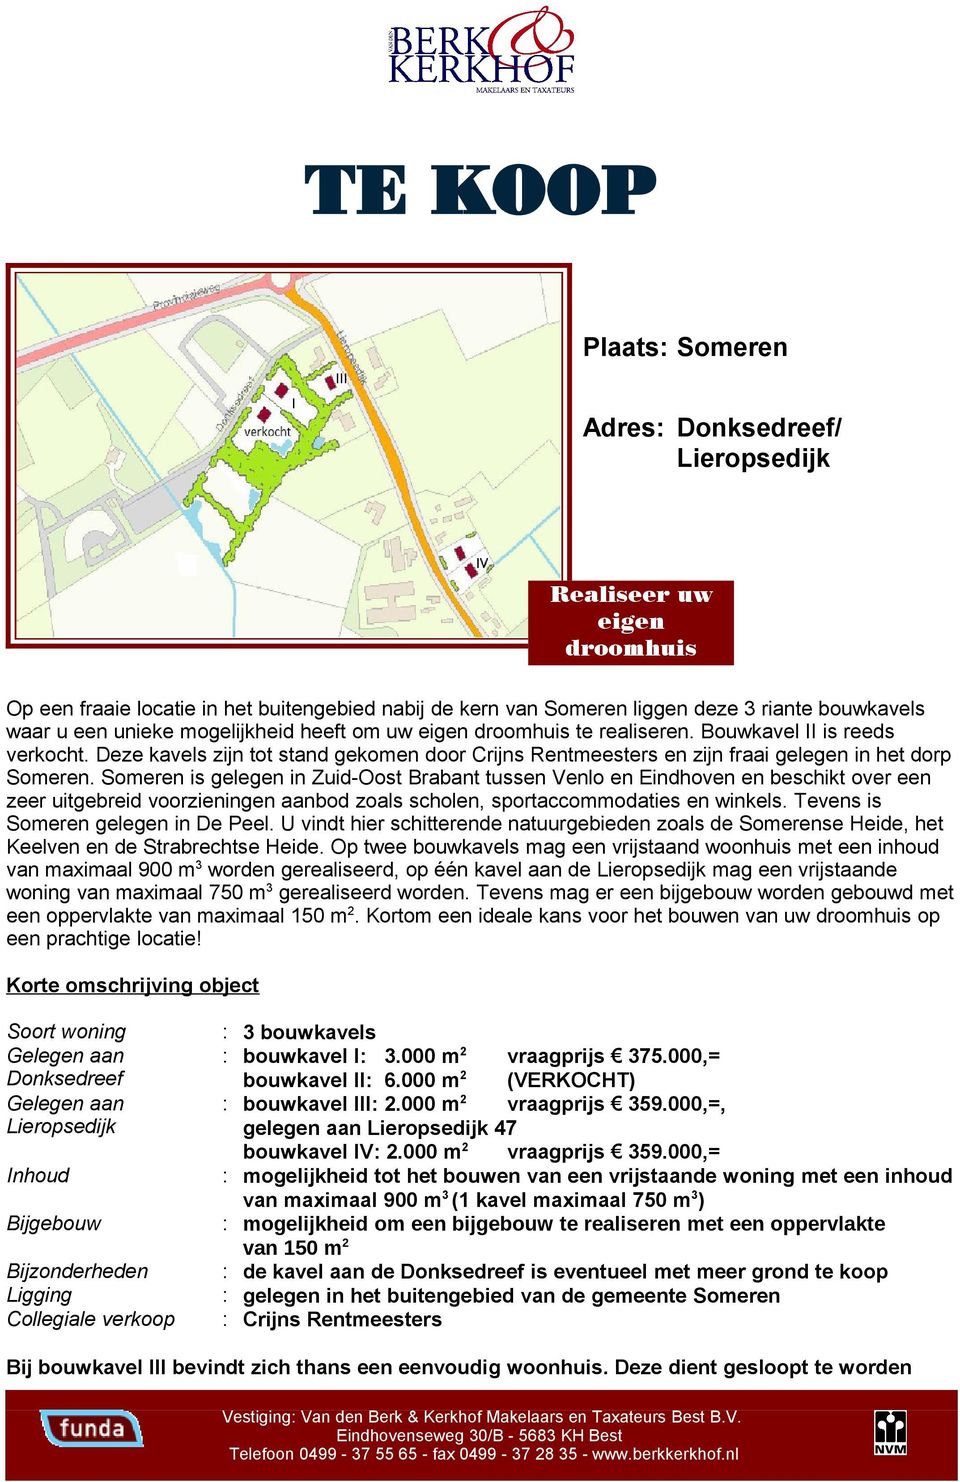 Someren is gelegen in Zuid-Oost Brabant tussen Venlo en Eindhoven en beschikt over een zeer uitgebreid voorzieningen aanbod zoals scholen, sportaccommodaties en winkels.